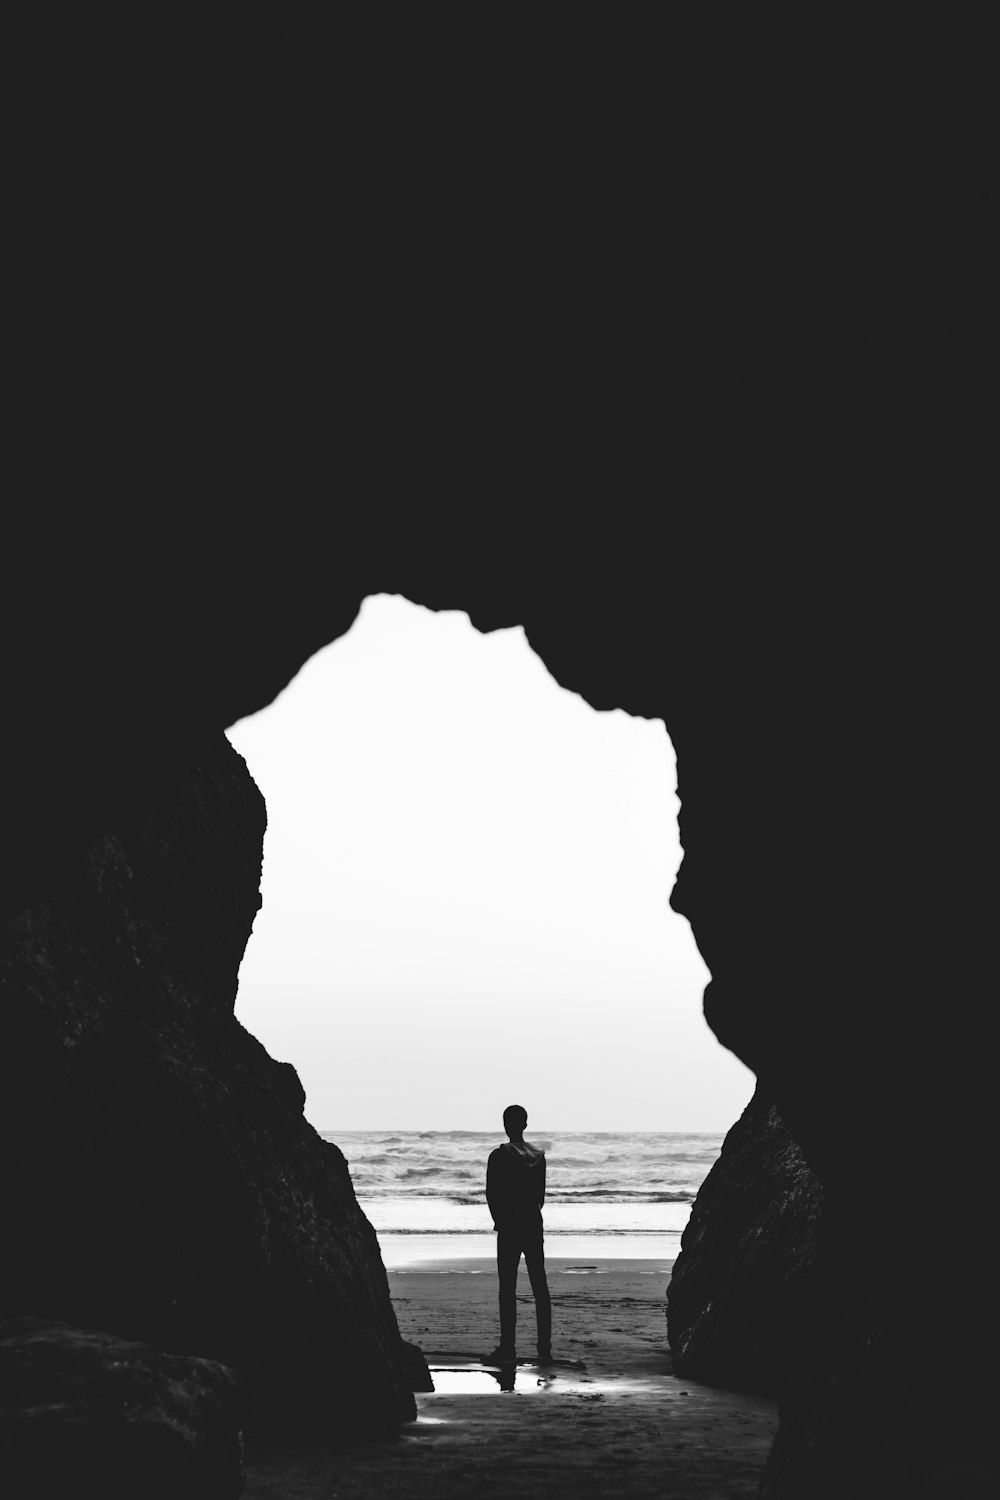 fotografia in scala di grigi dell'uomo in piedi in riva al mare